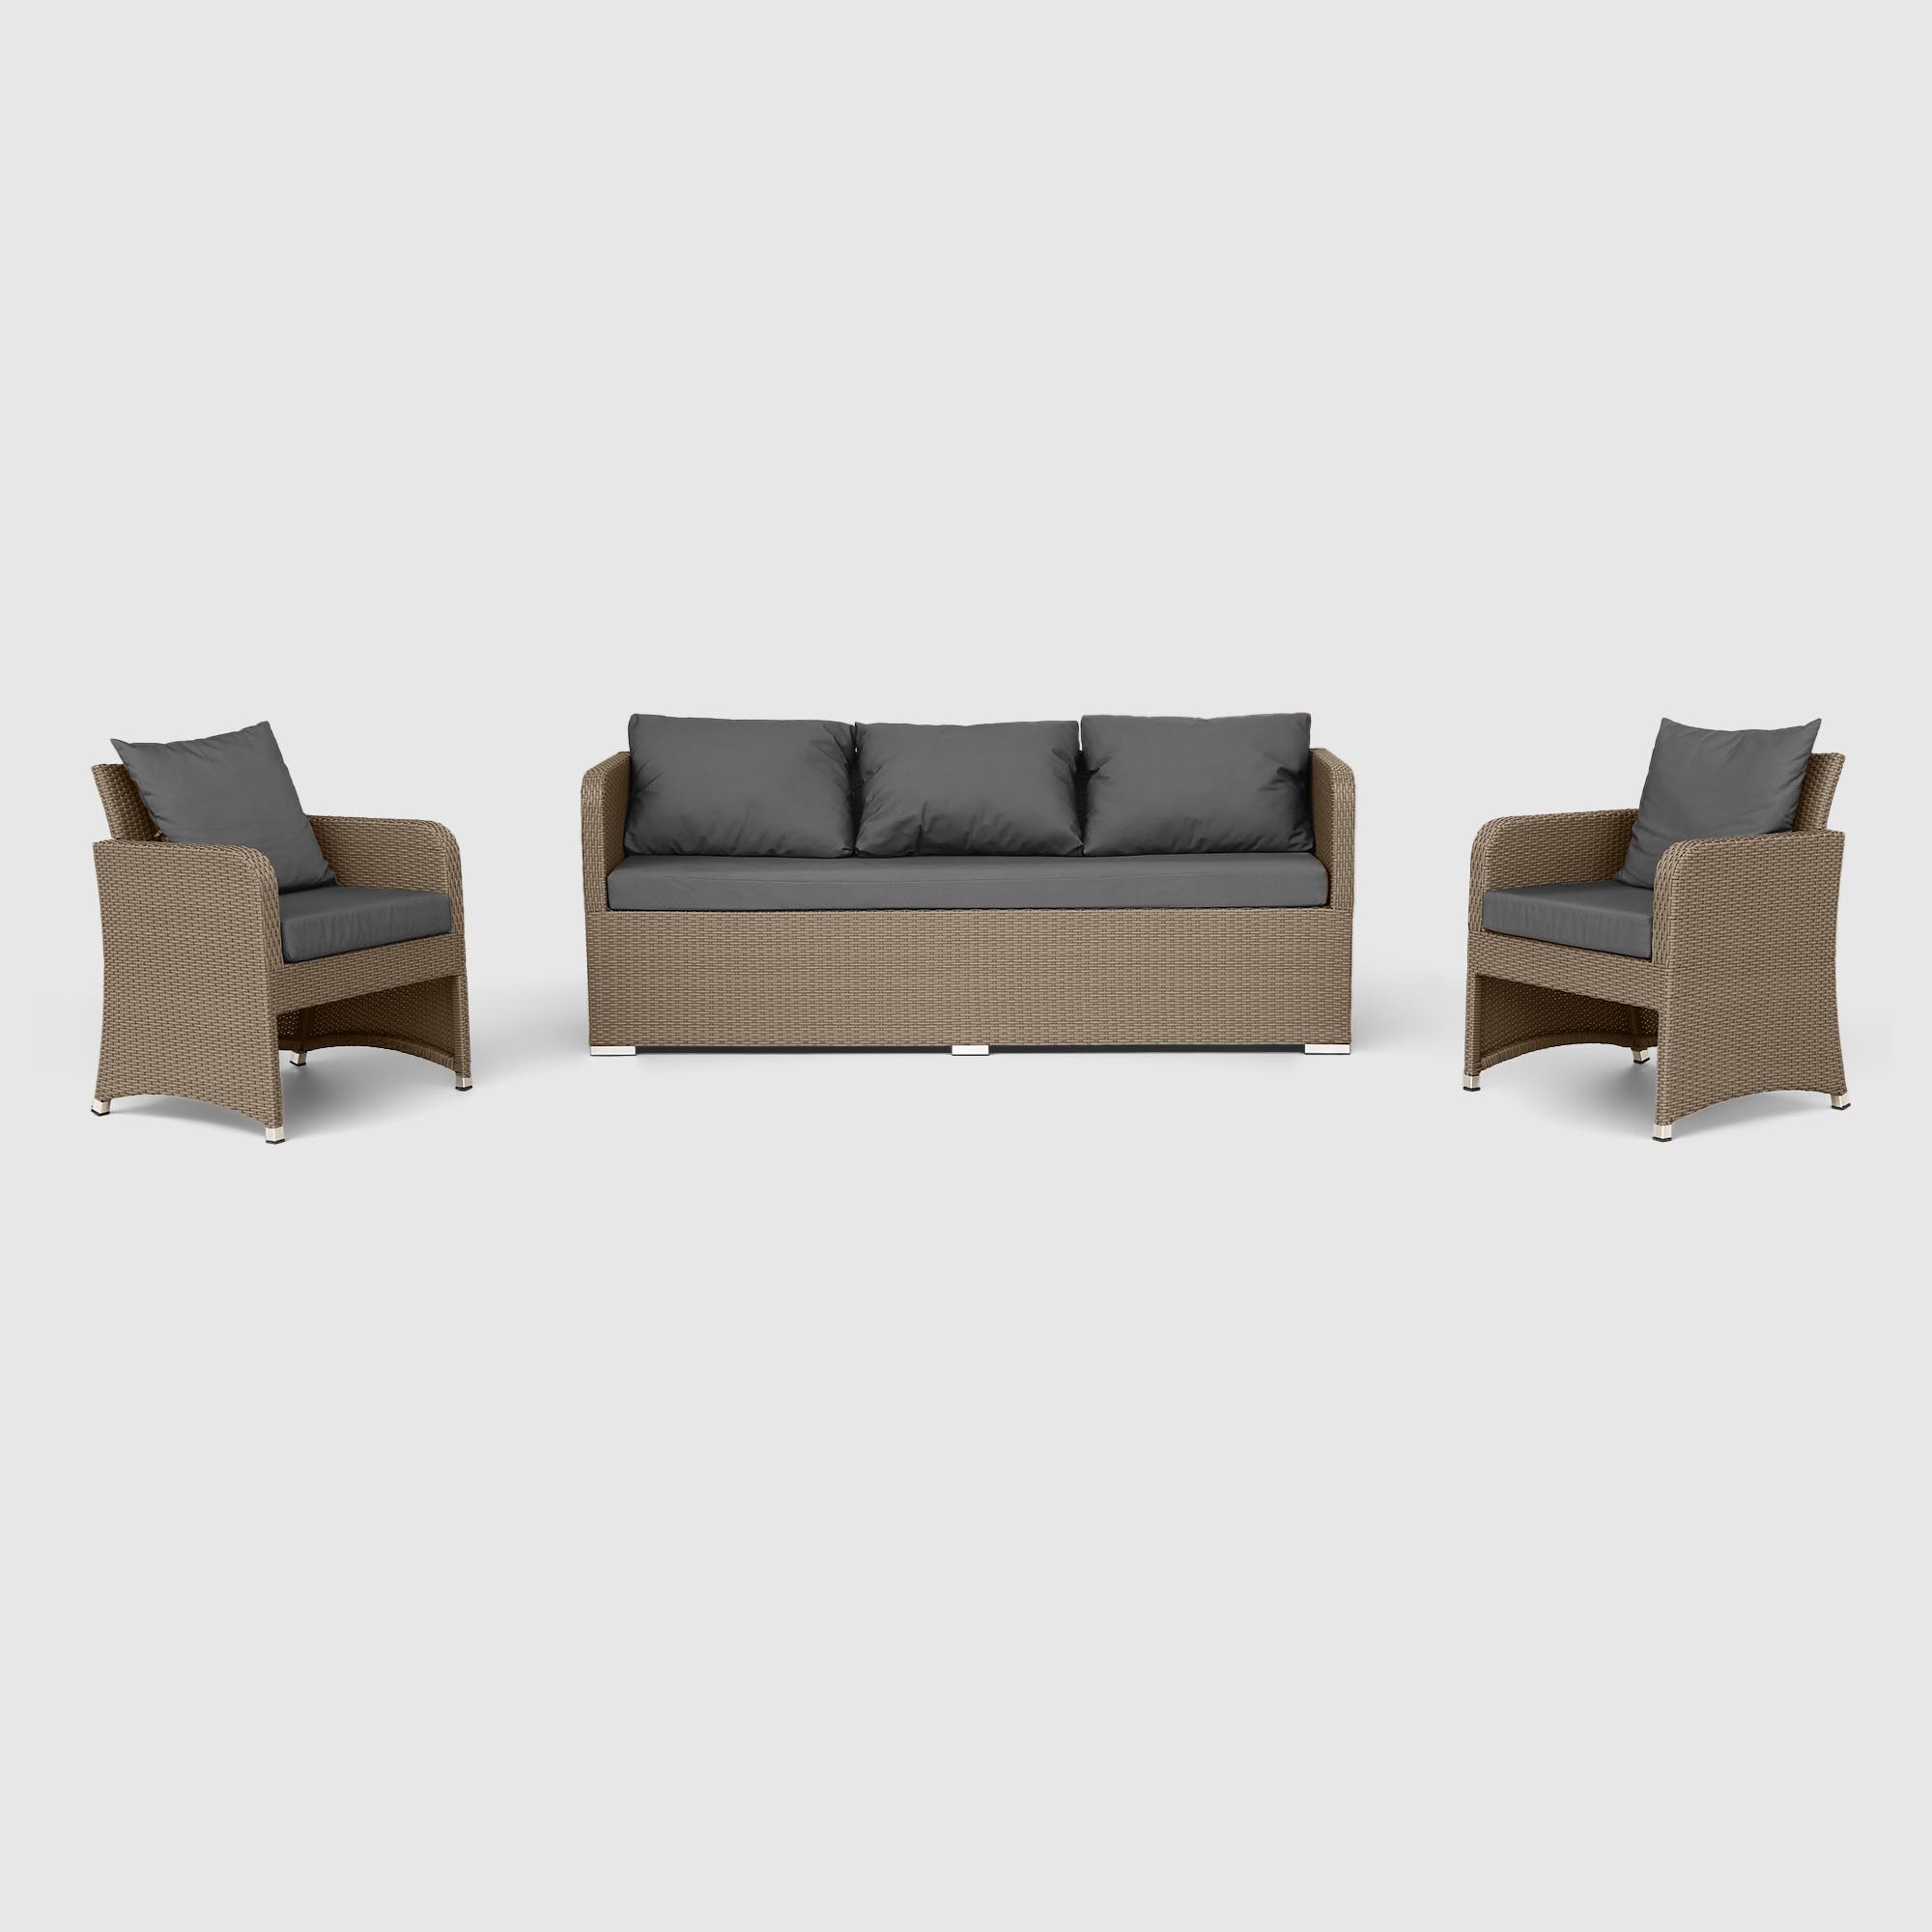 Комплект мебели NS Rattan LWS 21 коричневый с серым 3 предмета, цвет светло-коричневый, размер 220х75х75 - фото 1